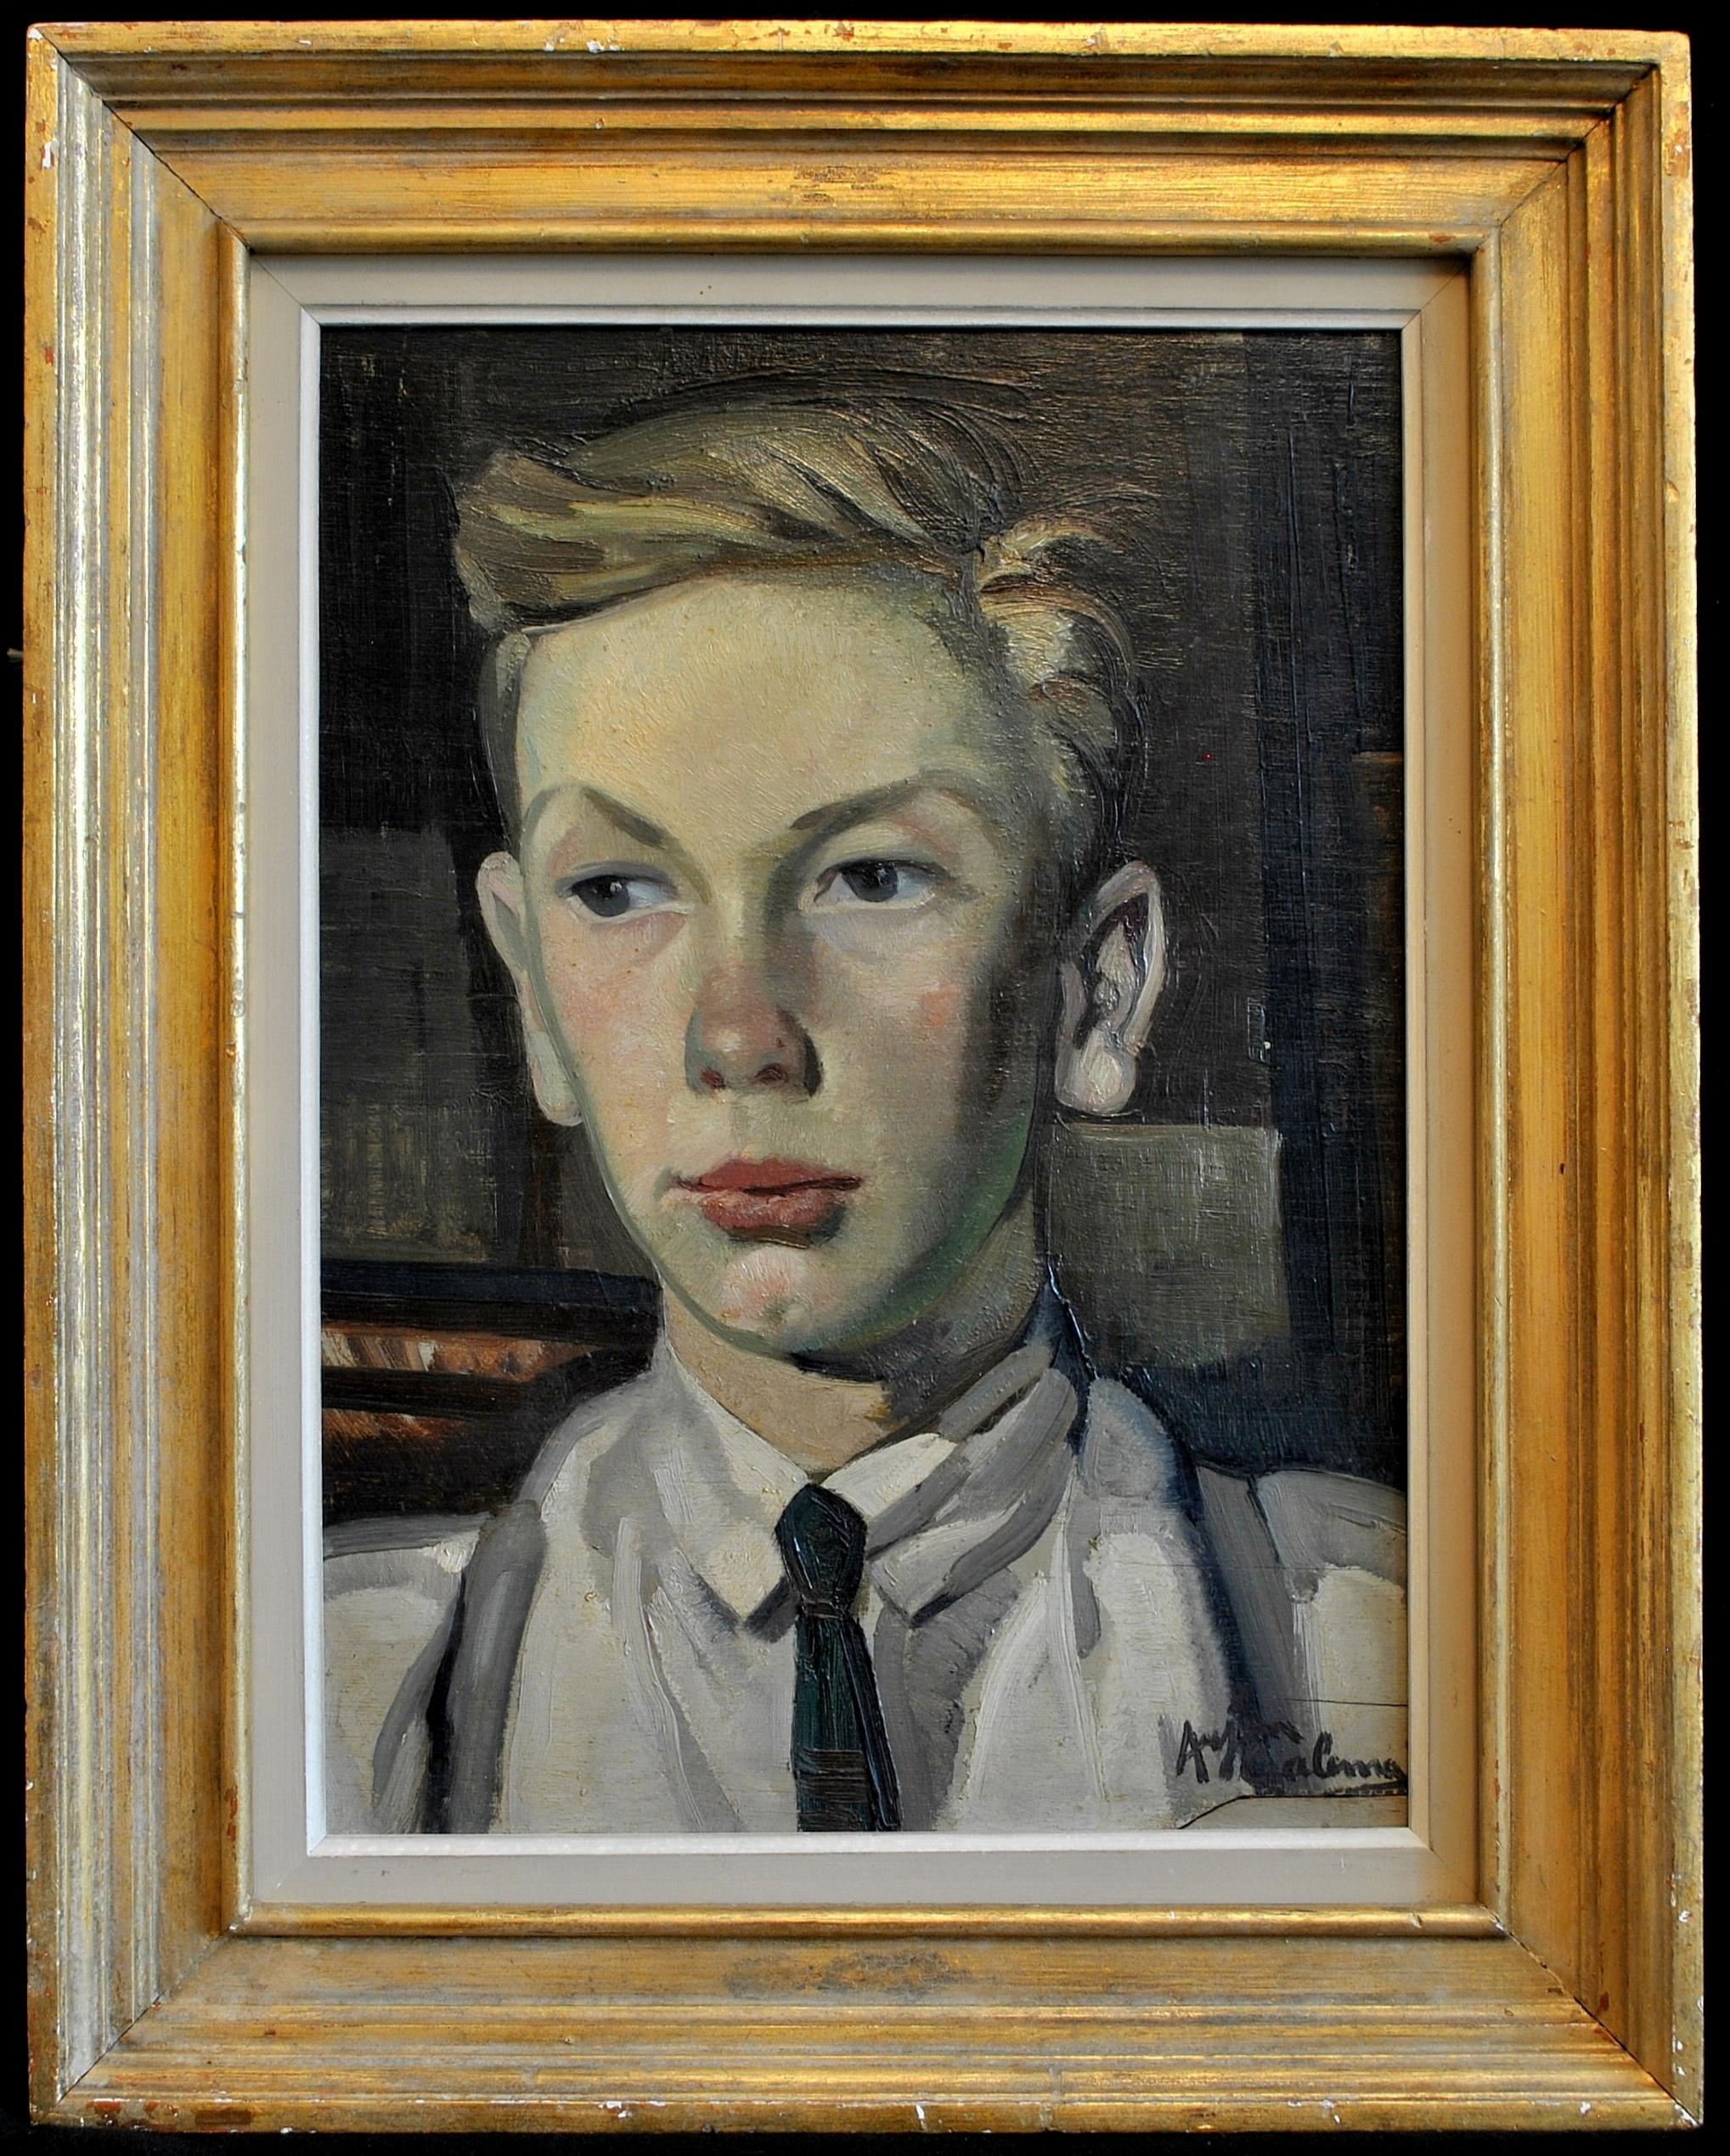 Arjen Galema Portrait Painting - Self Portrait - Dutch Post Impressionist Antique Oil on Panel Painting